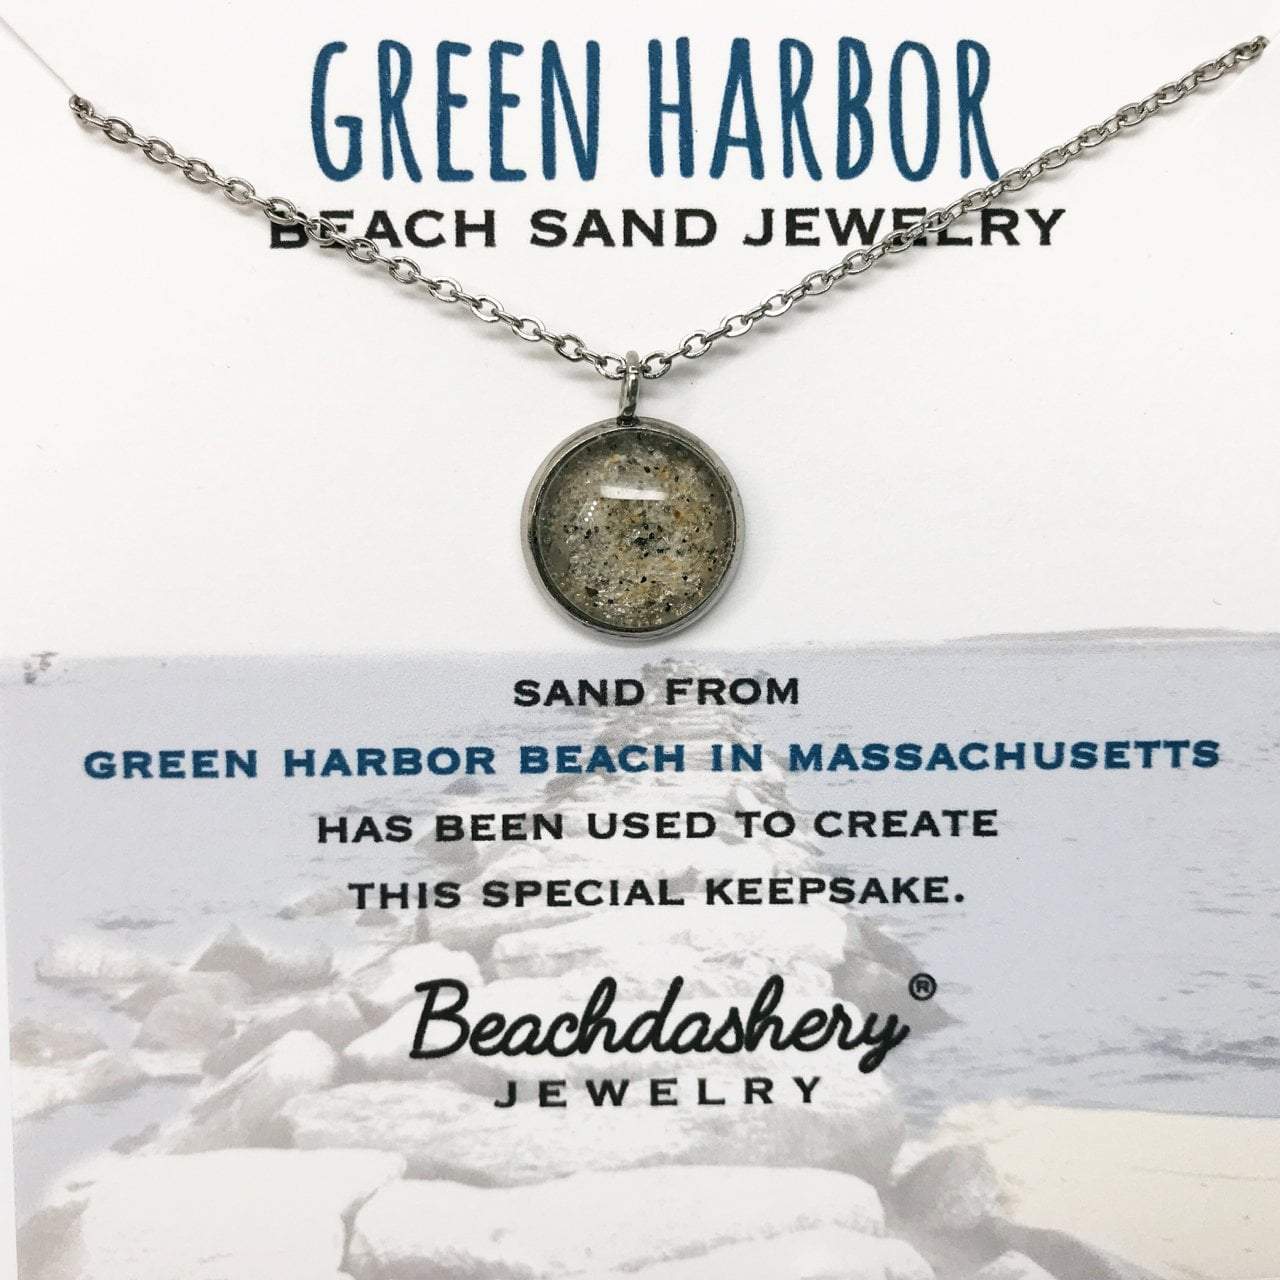 Green Harbor Beach Sand Jewelry Beachdashery® Jewelry